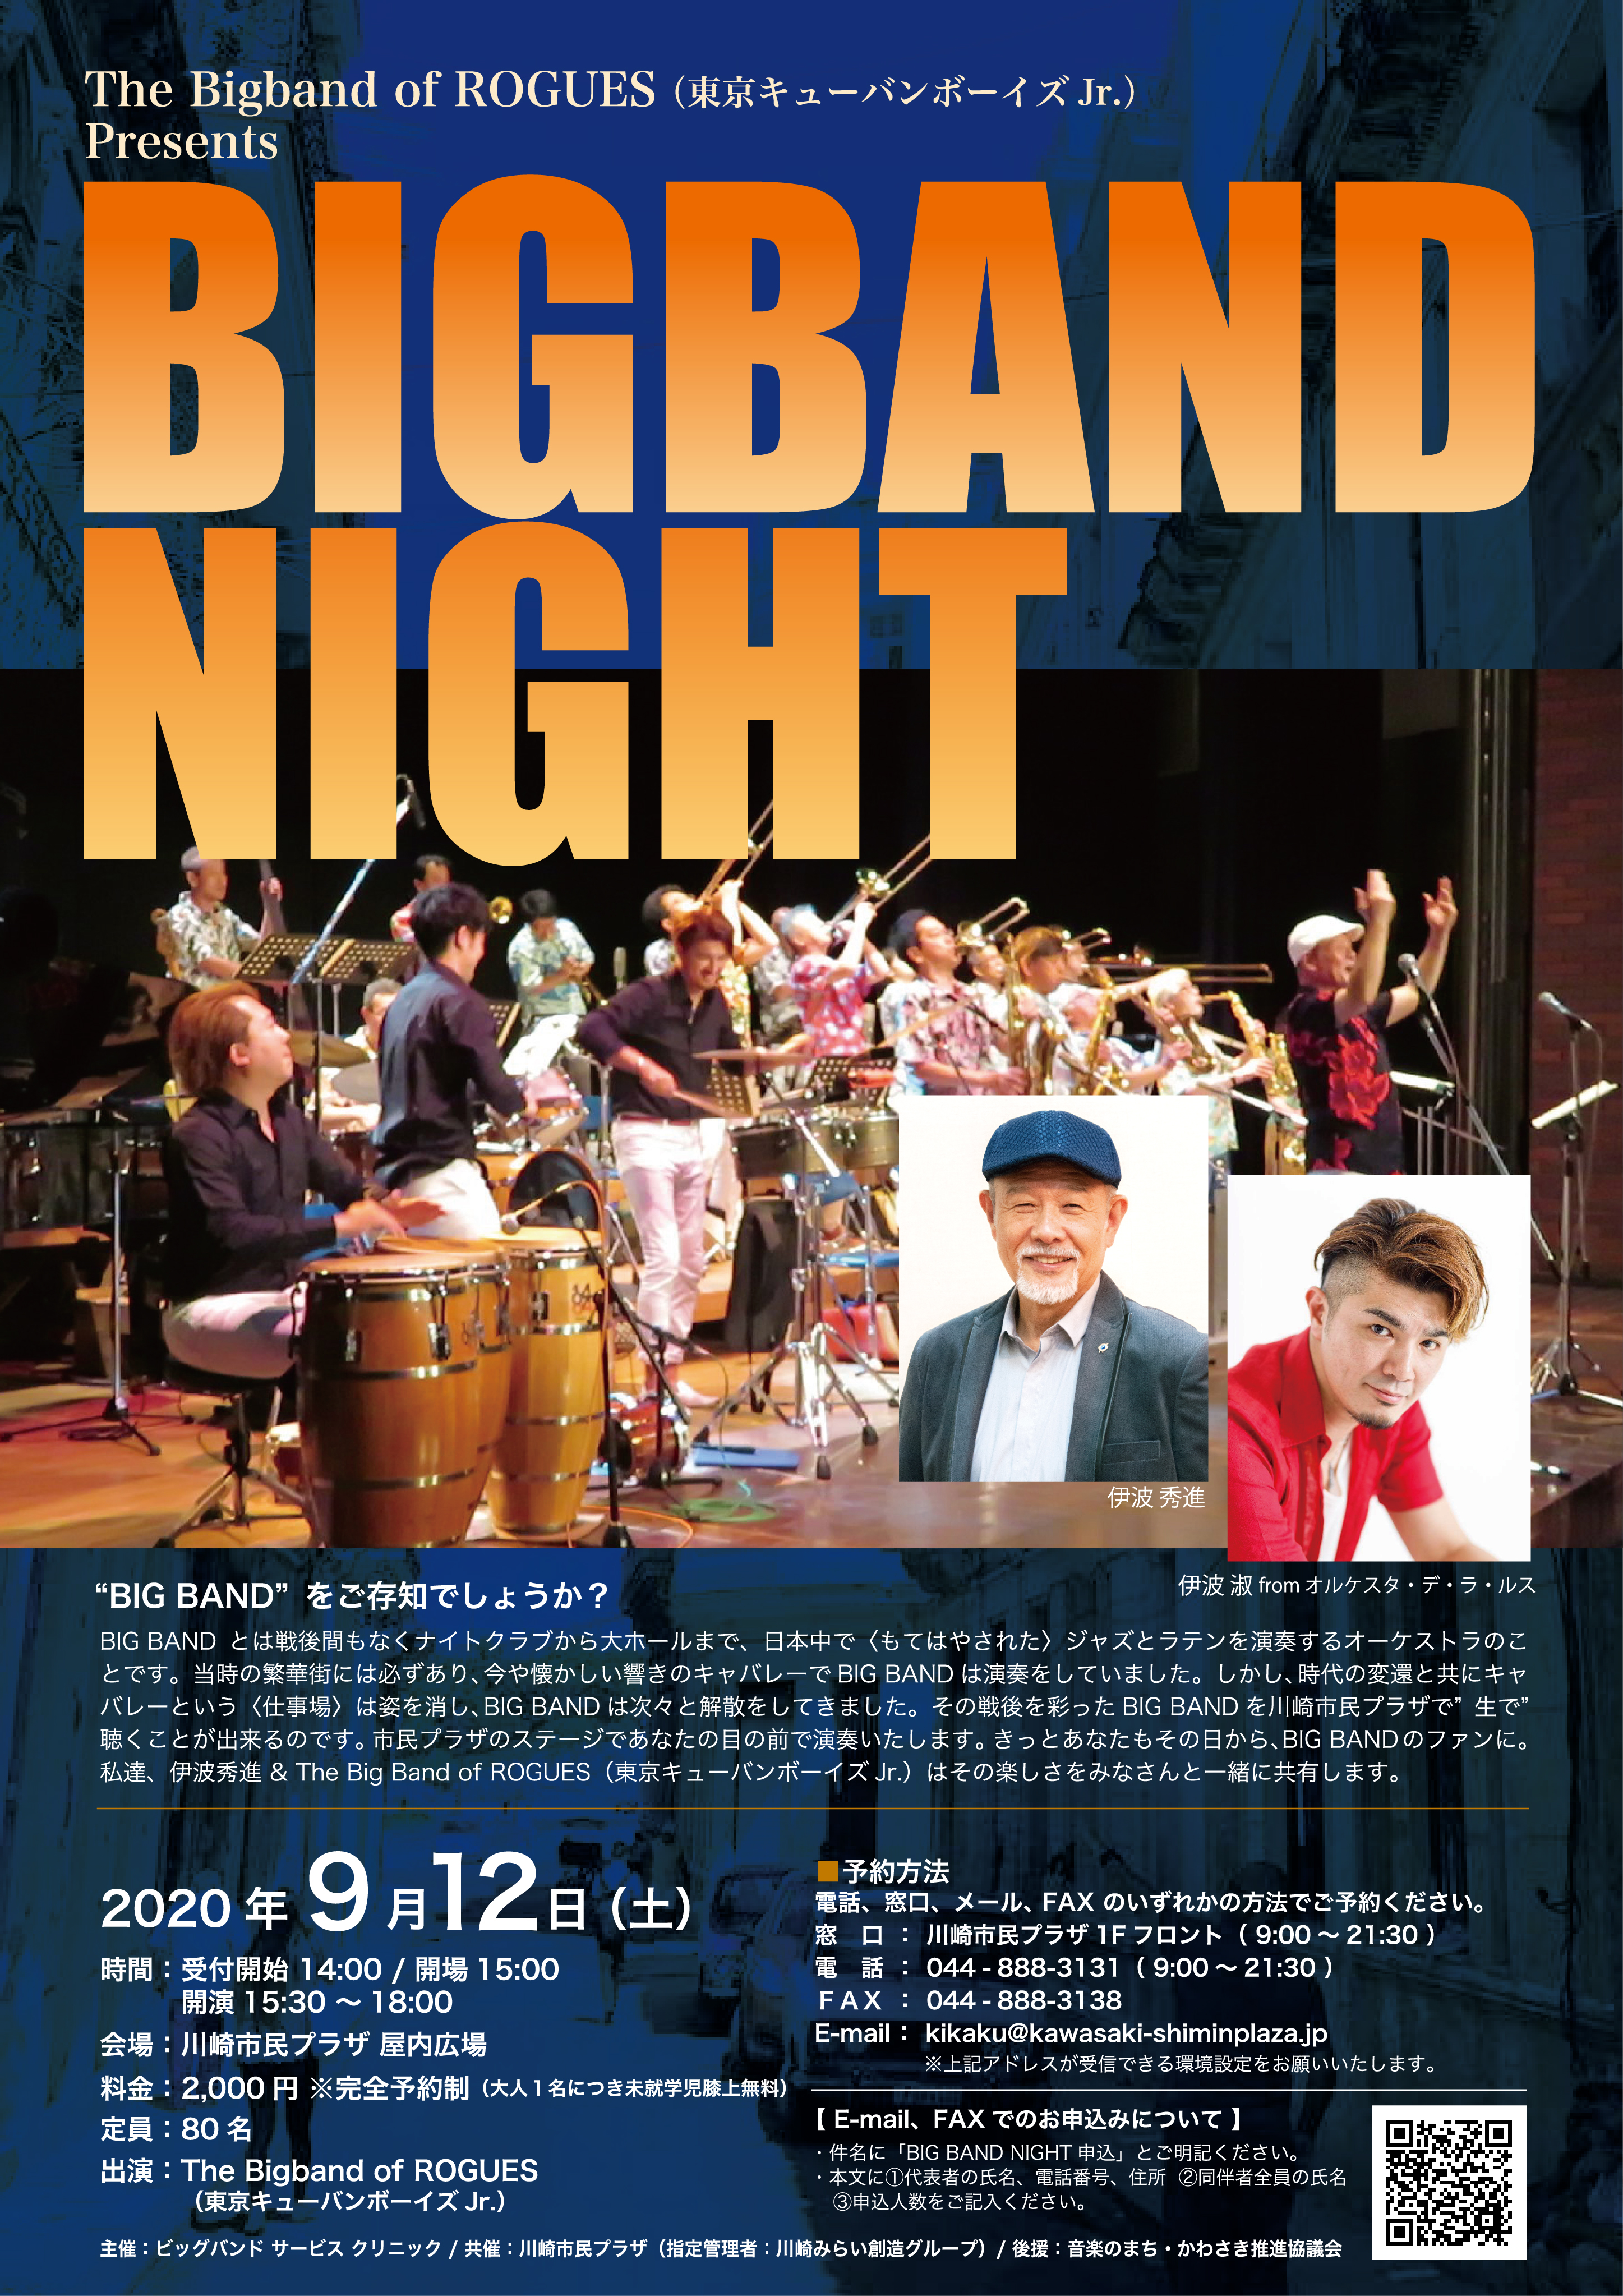 【2020年9月12日】BIG BAND NIGHT